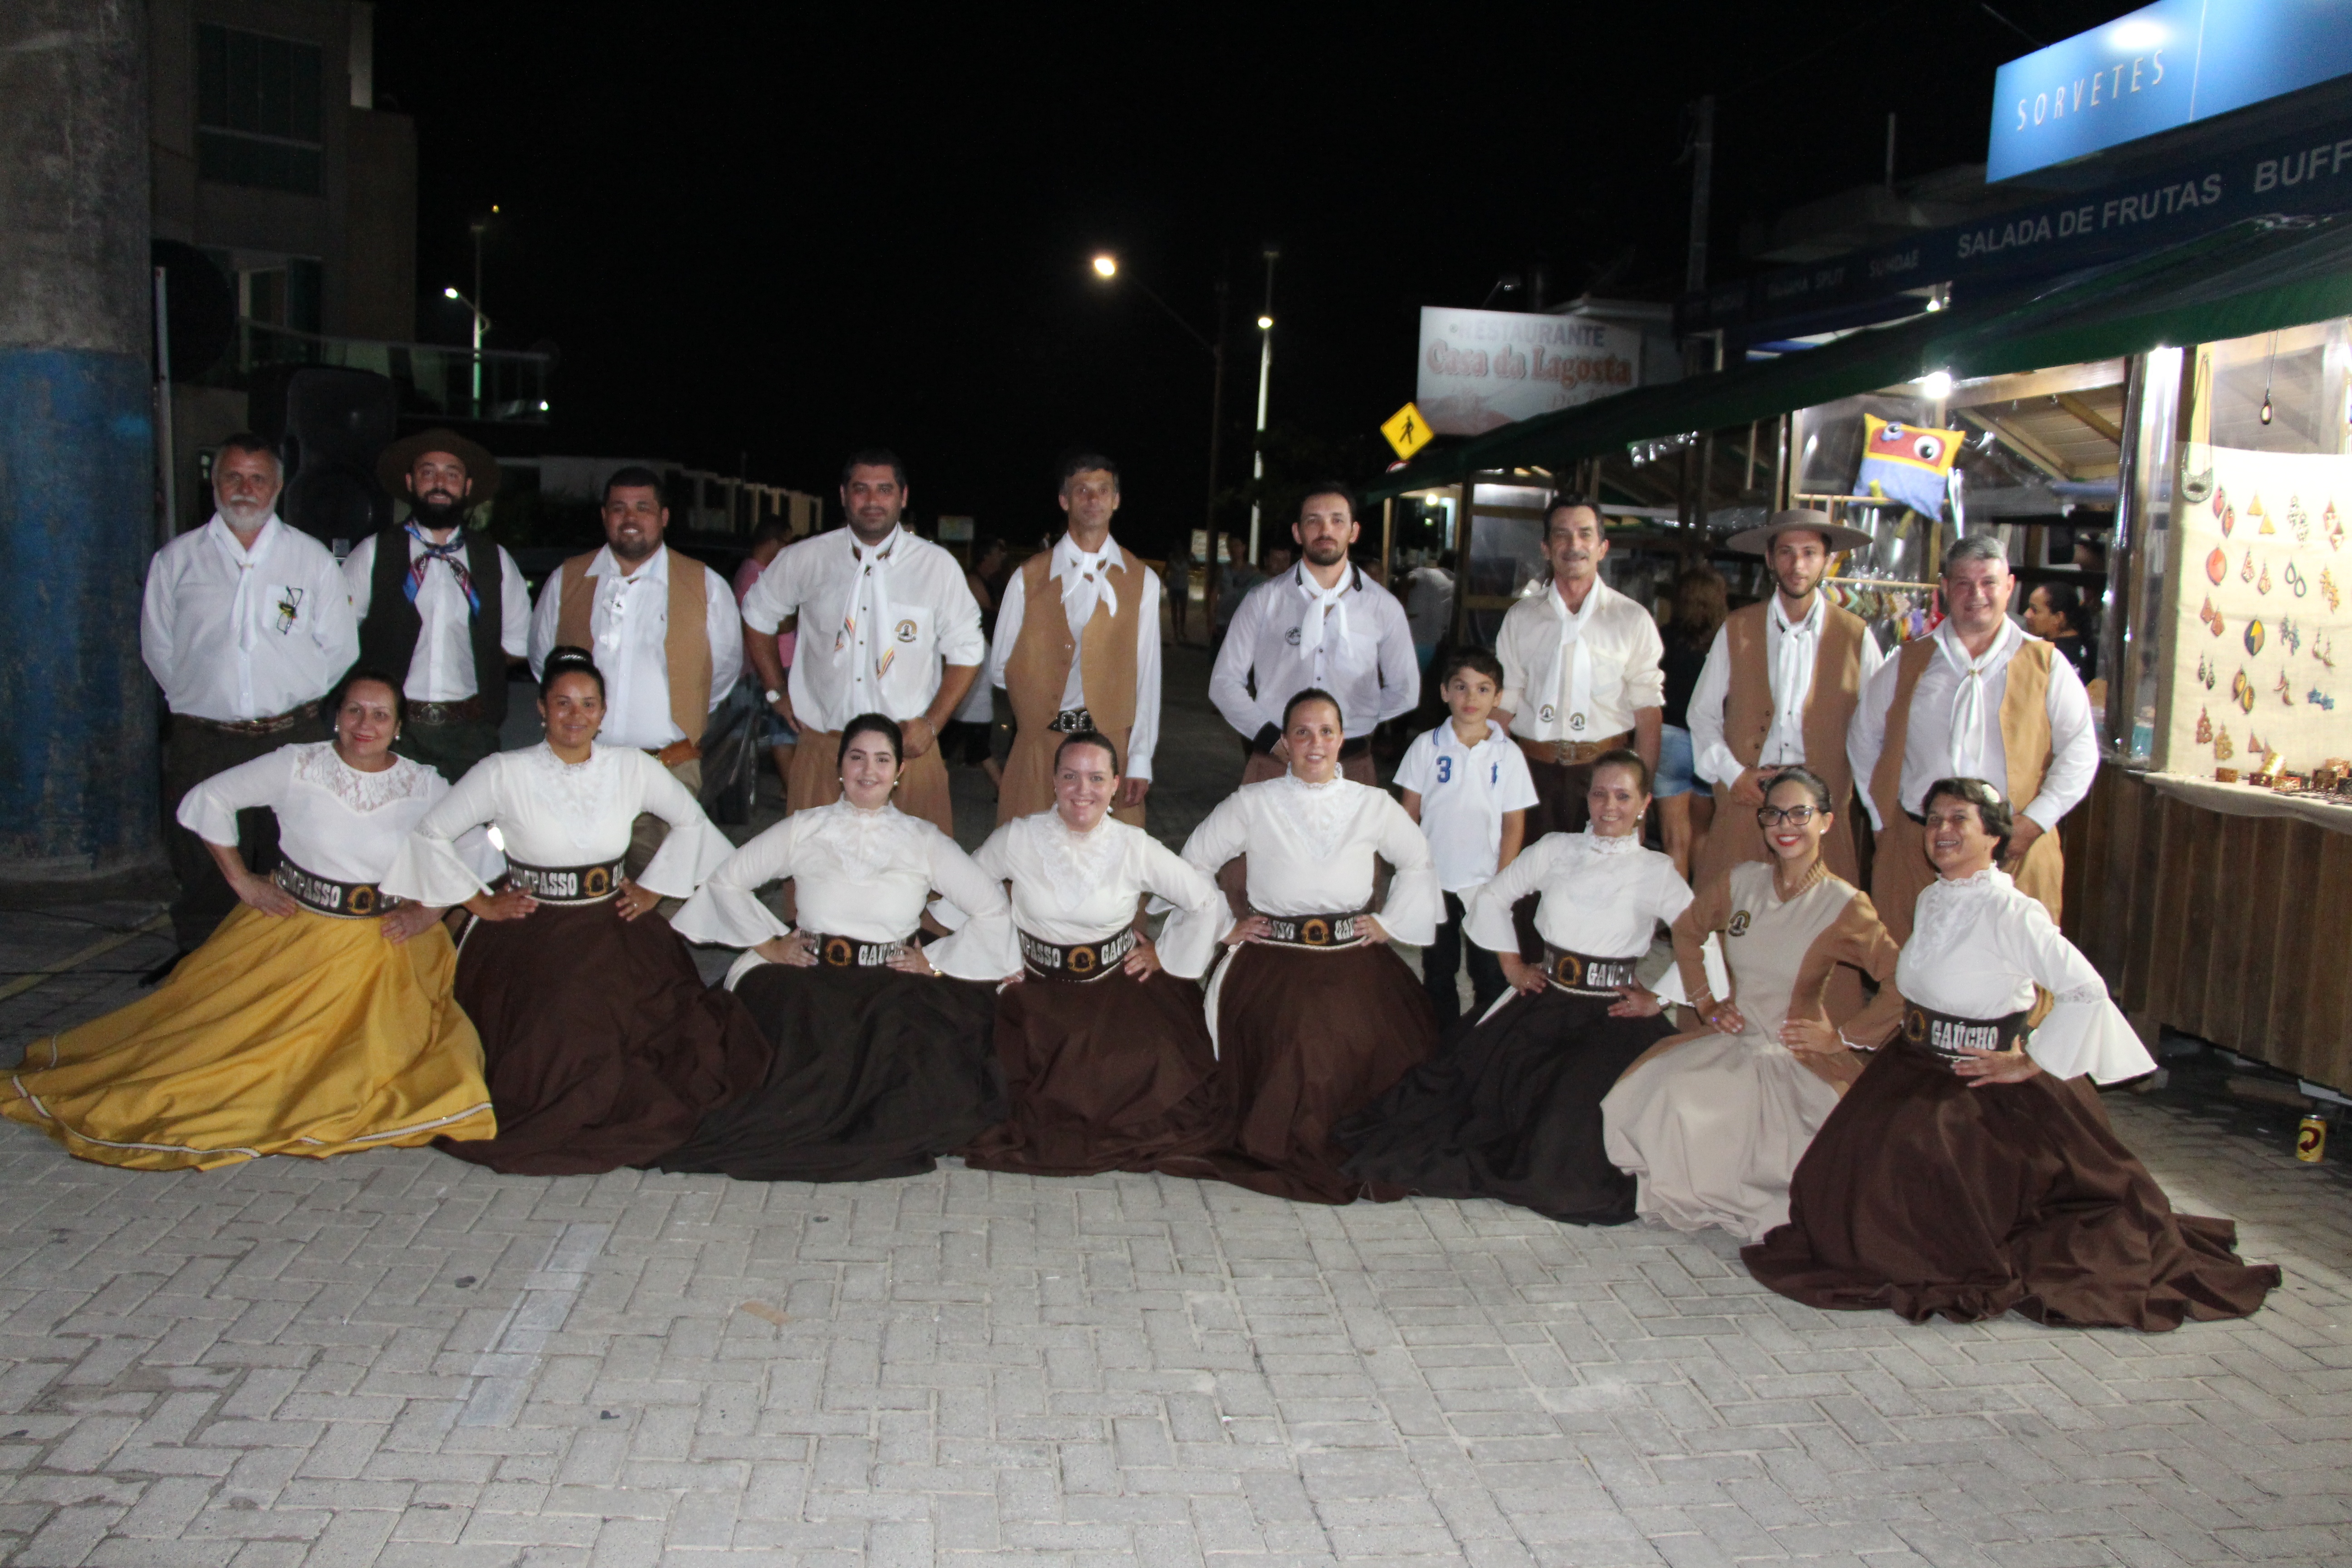 Grupo Compasso gaúcho realiza apresentação de sucesso, recheada de encantamento, no Cultura na Rua.